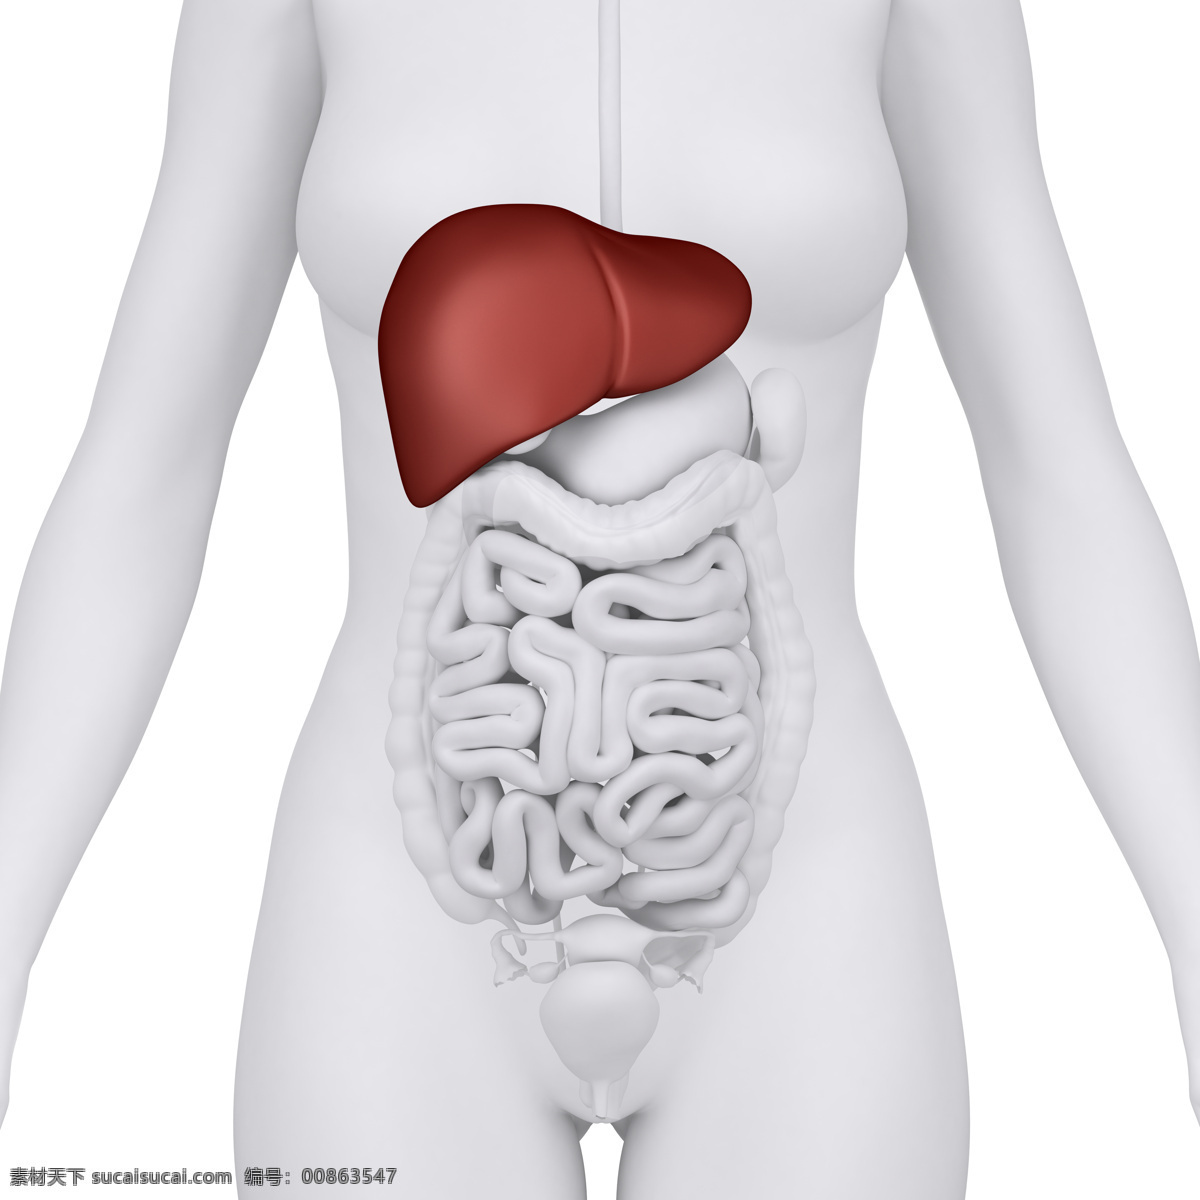 女性 肝 肠胃 器官 女性器官 肝器官 肠胃器官 人体器官 医疗科学 医学 人体器官图 人物图片